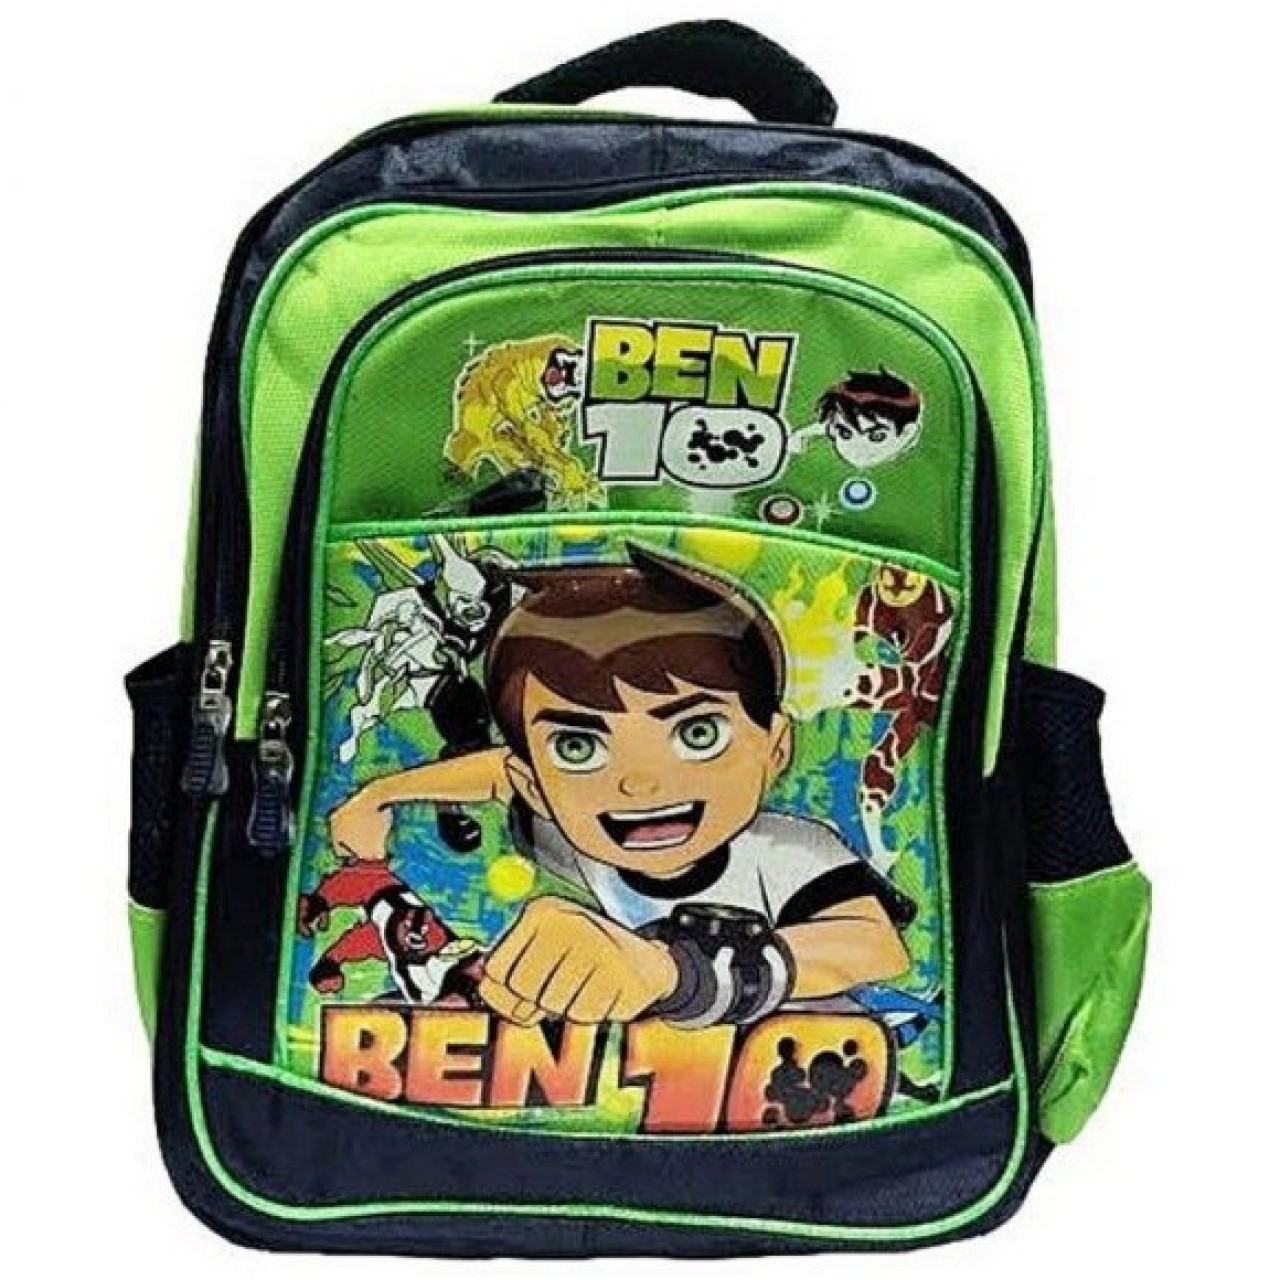 Ben 10 School Bag For Kids - Nursery Class